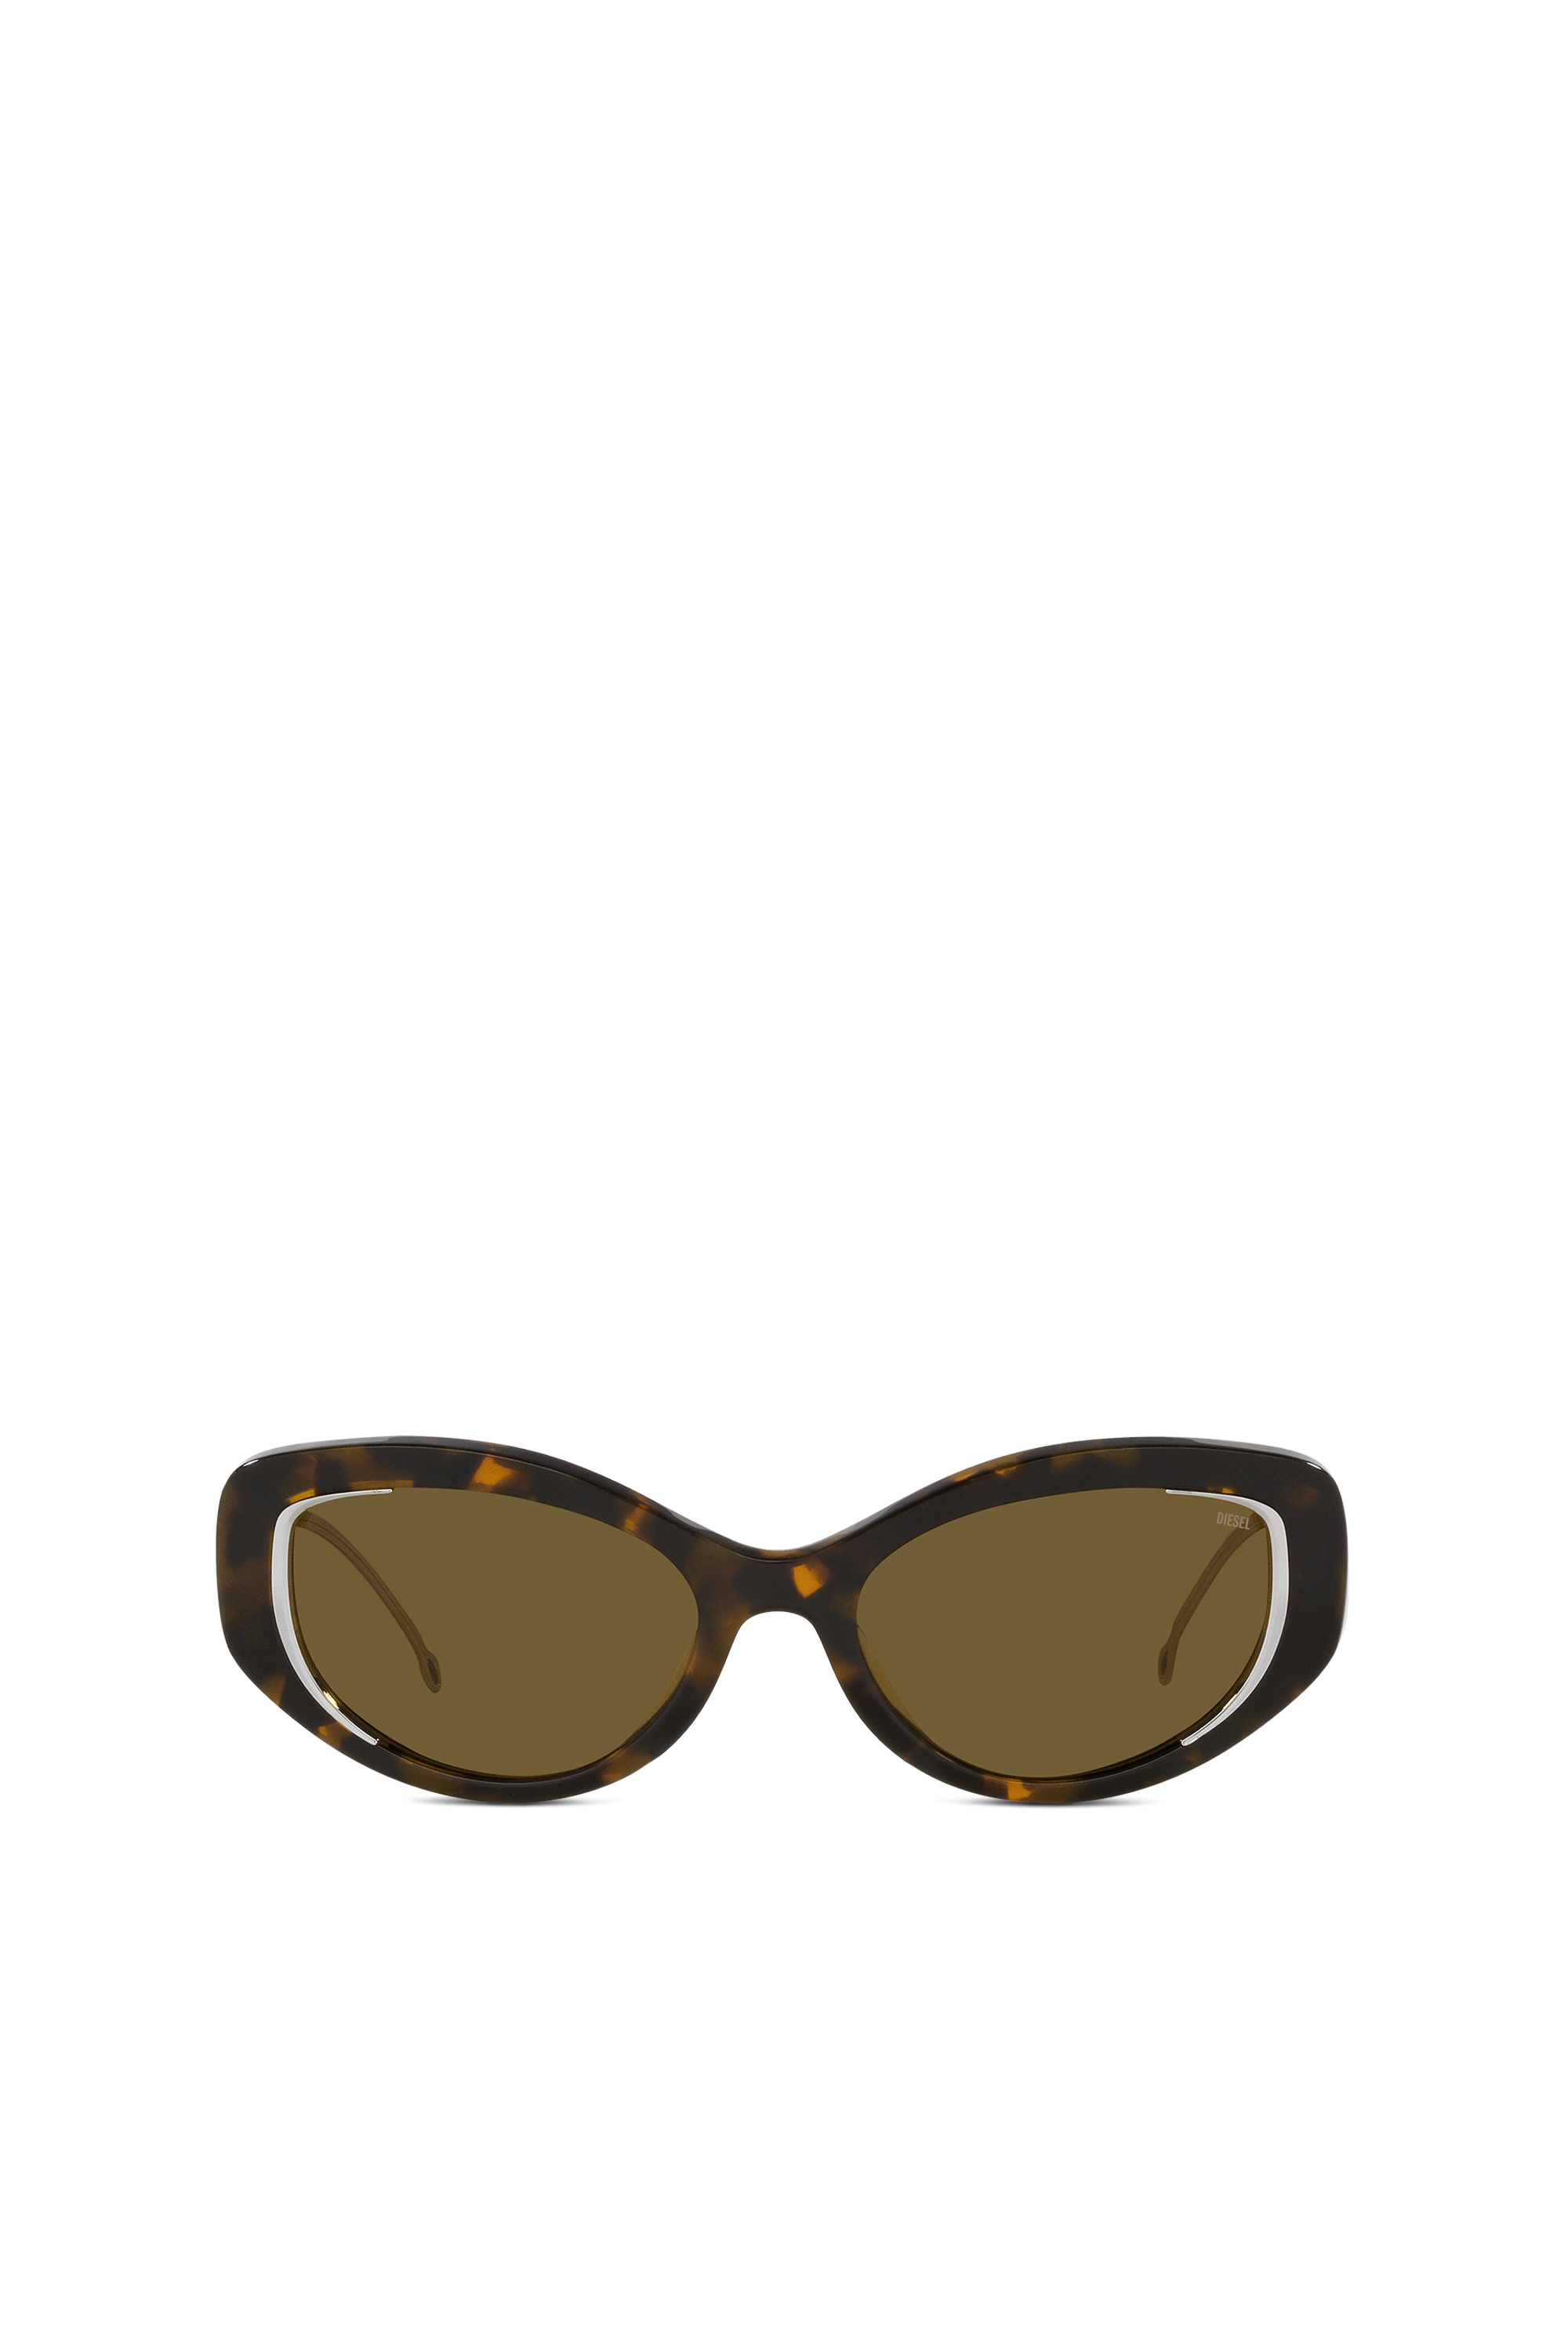 Diesel - Gafas modelo de ojo de gato - Gafas de sol - Unisex - Marrón